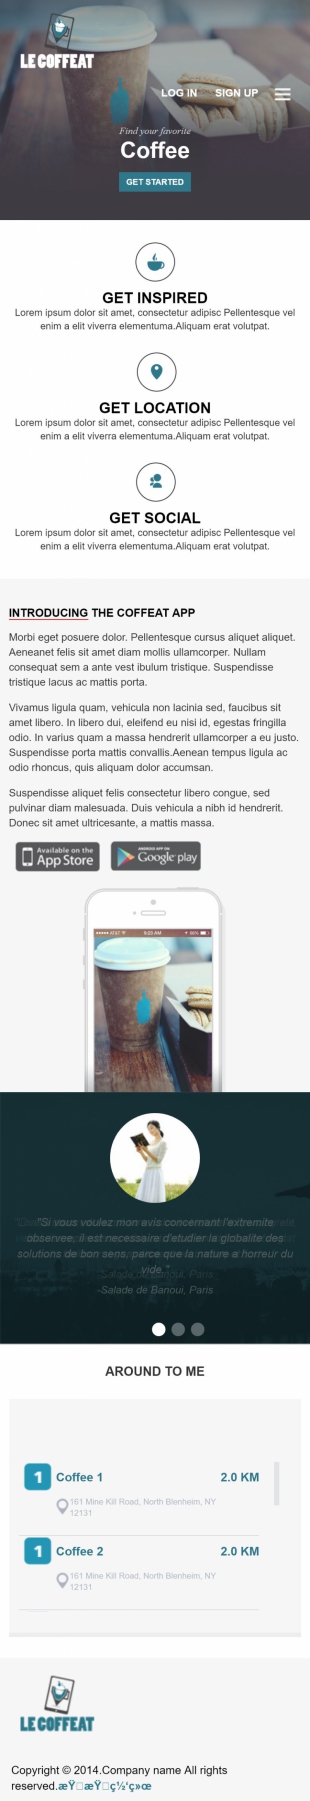 咖啡店英文模板网站制作响应式网站手机图片